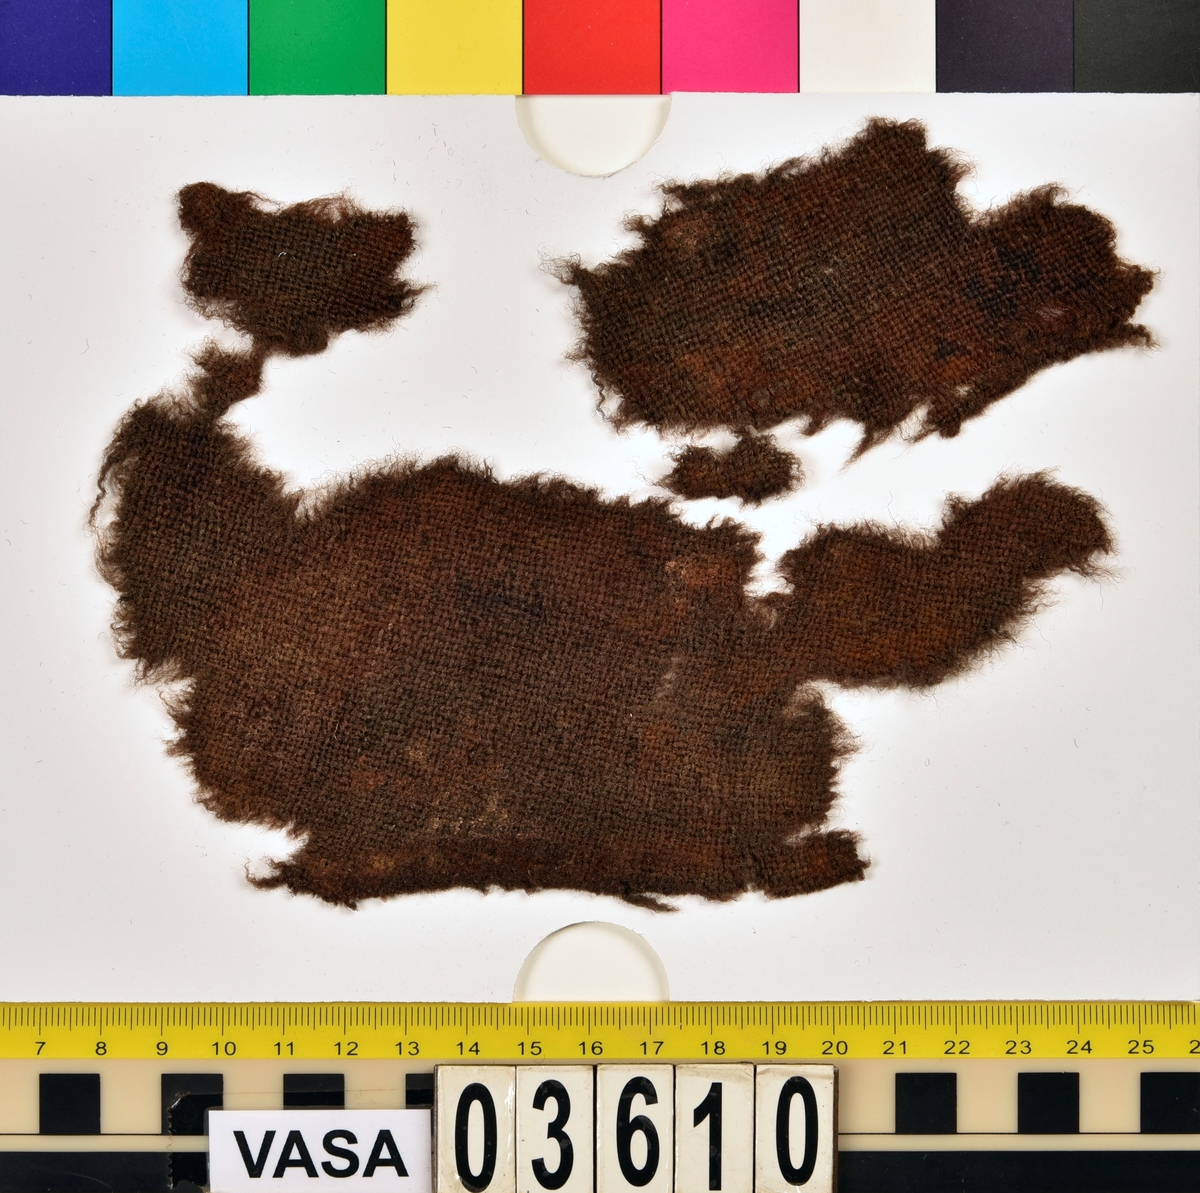 Textilfragment. Tre stycken fragment av ull vävt i tuskaft.
Fyndnummer 03610b är ett läderfragment.